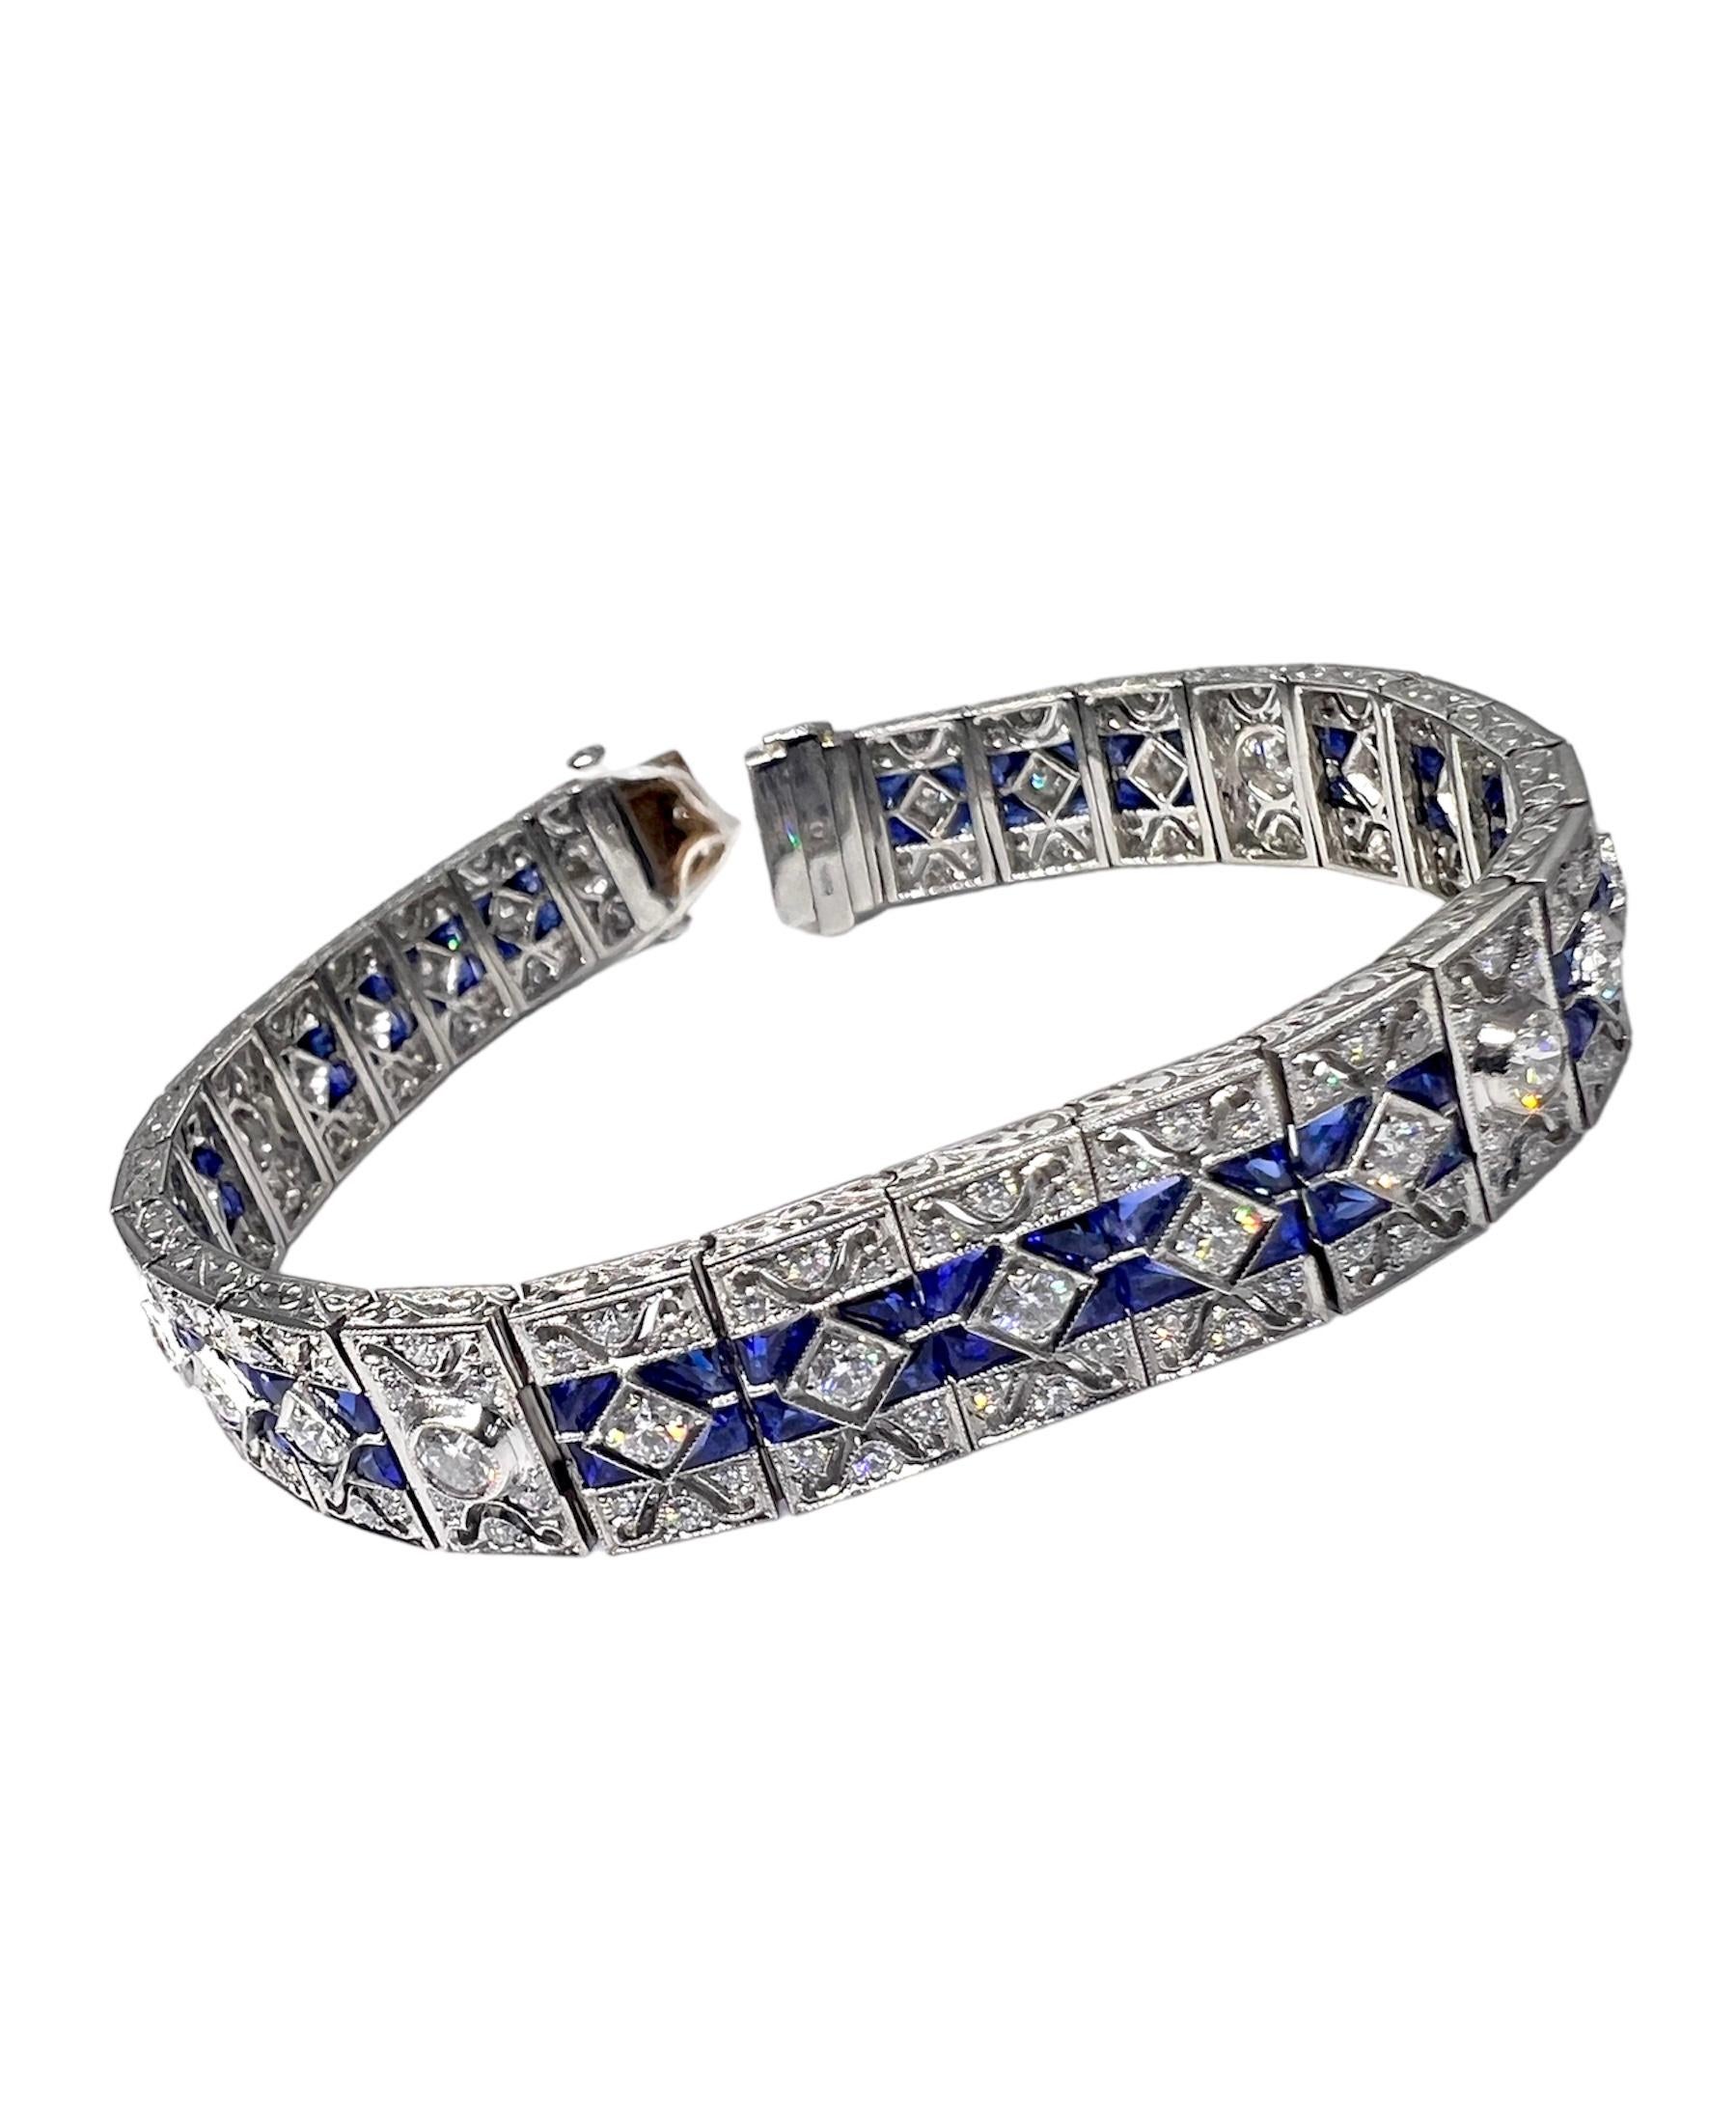 Round Cut Sophia D. 17.90 Carat Blue Sapphire and Diamond Art Deco Bracelet For Sale